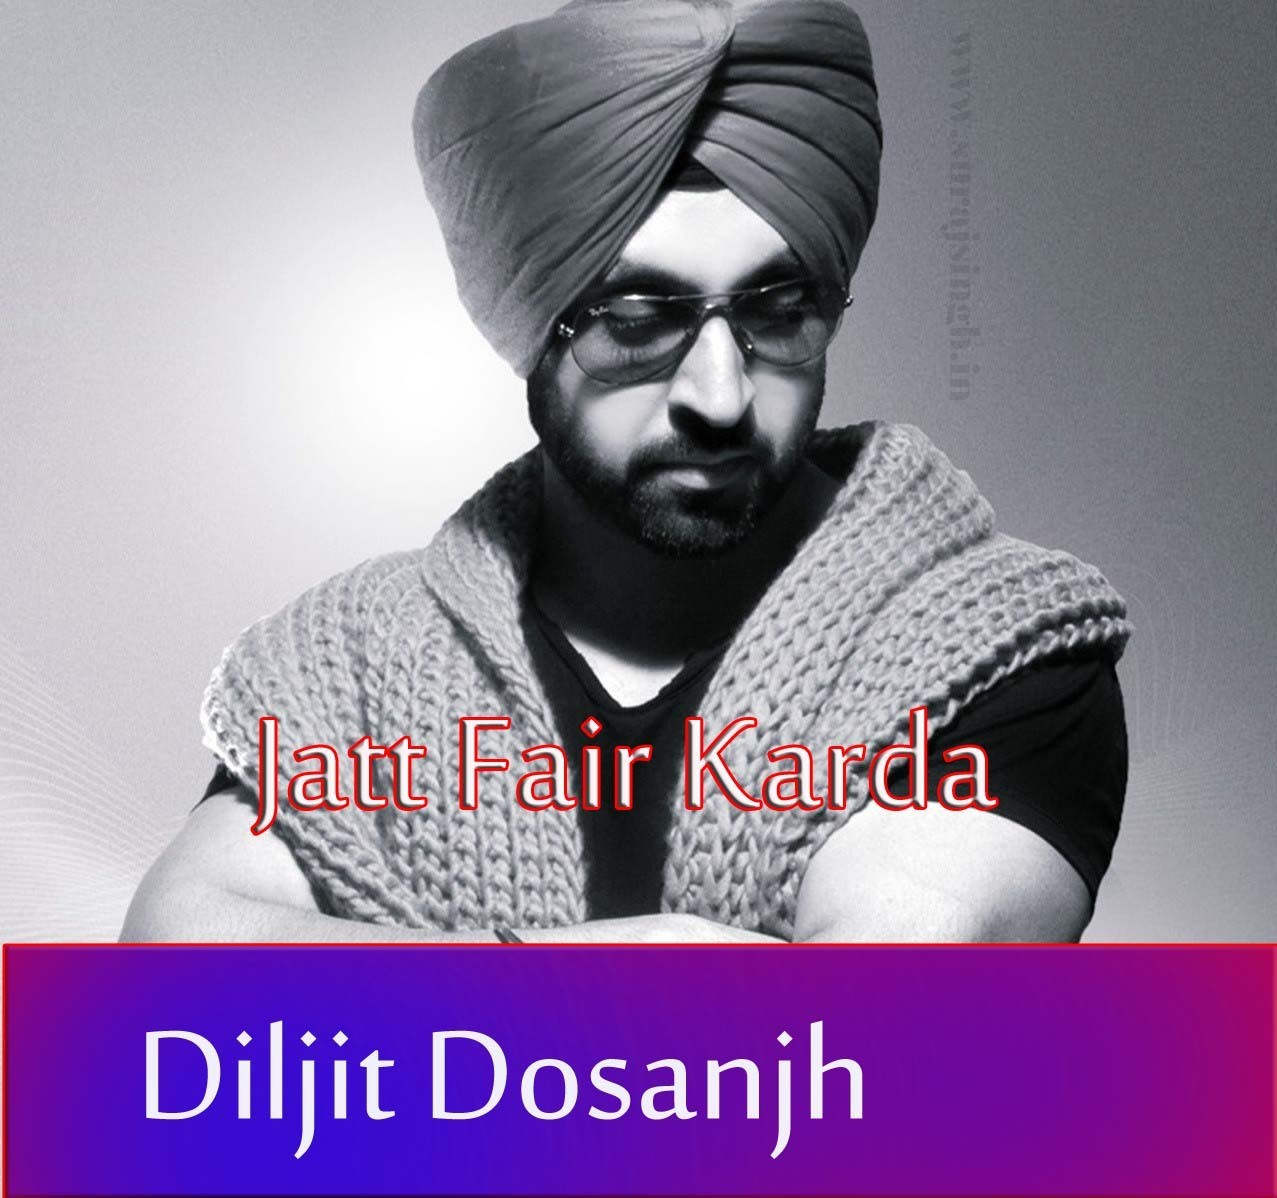 Indian Punjabi Singer Diljit Dosanjh